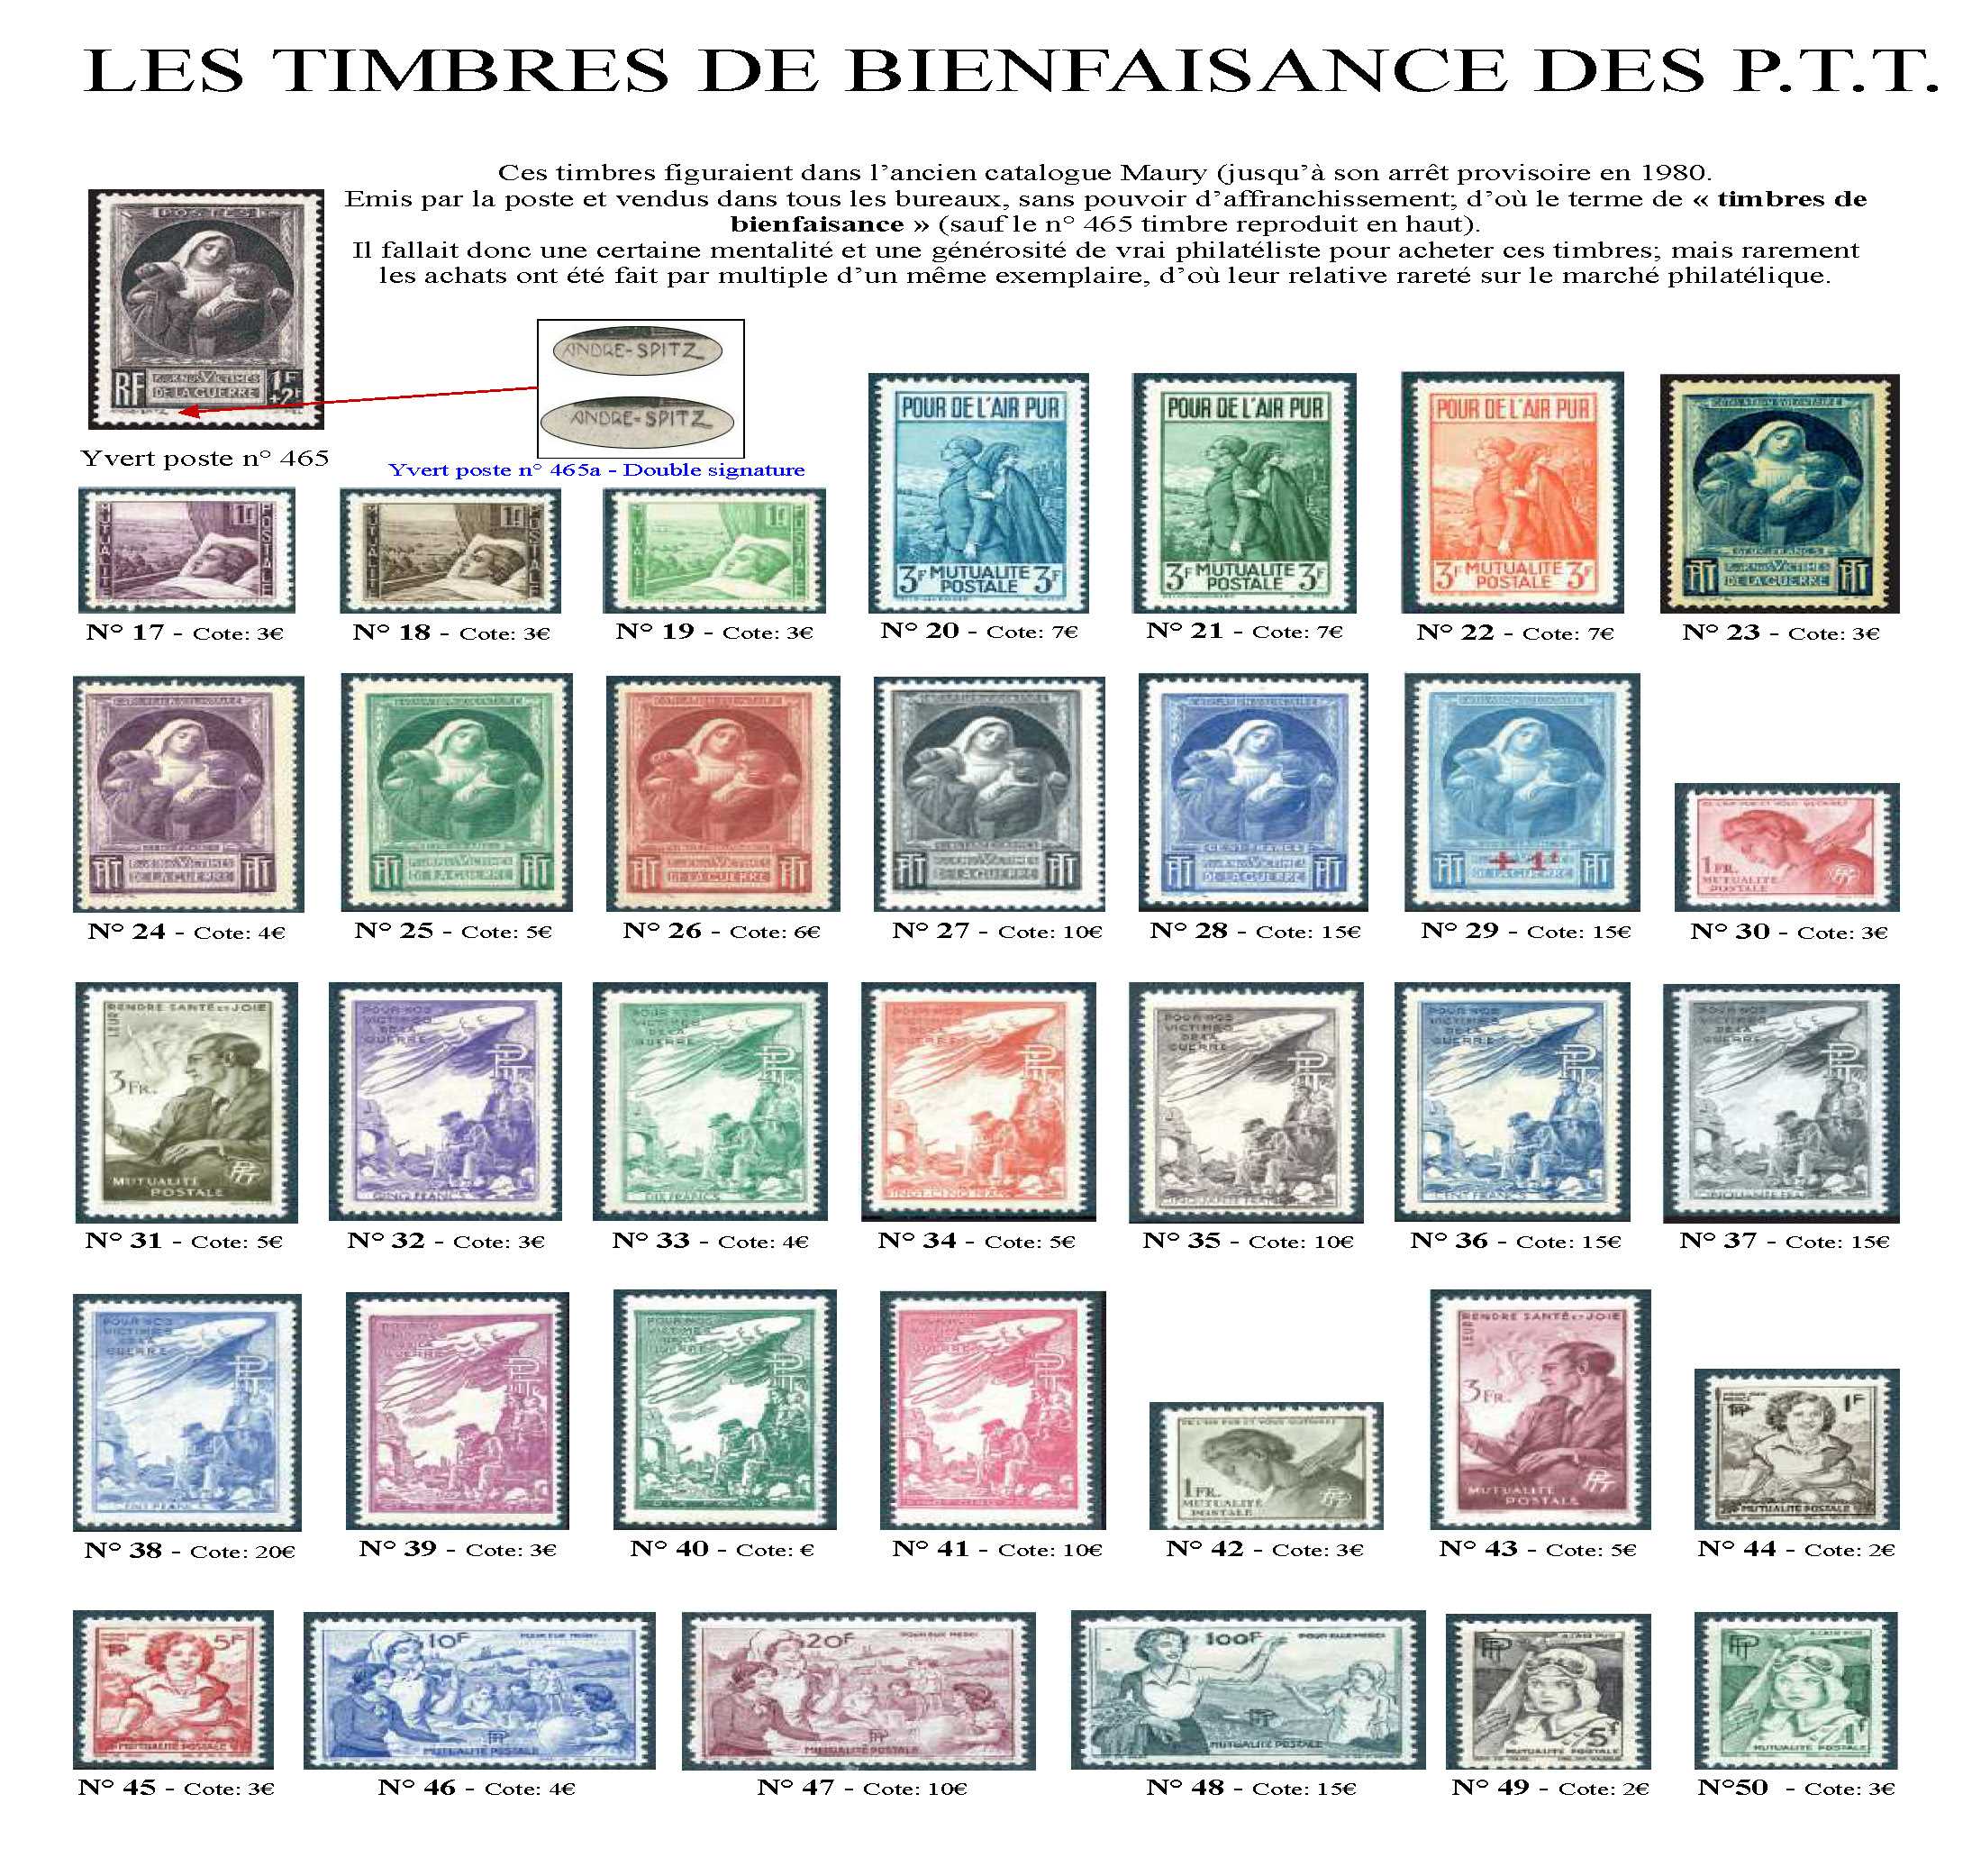 timbres de bienfaisance PTT